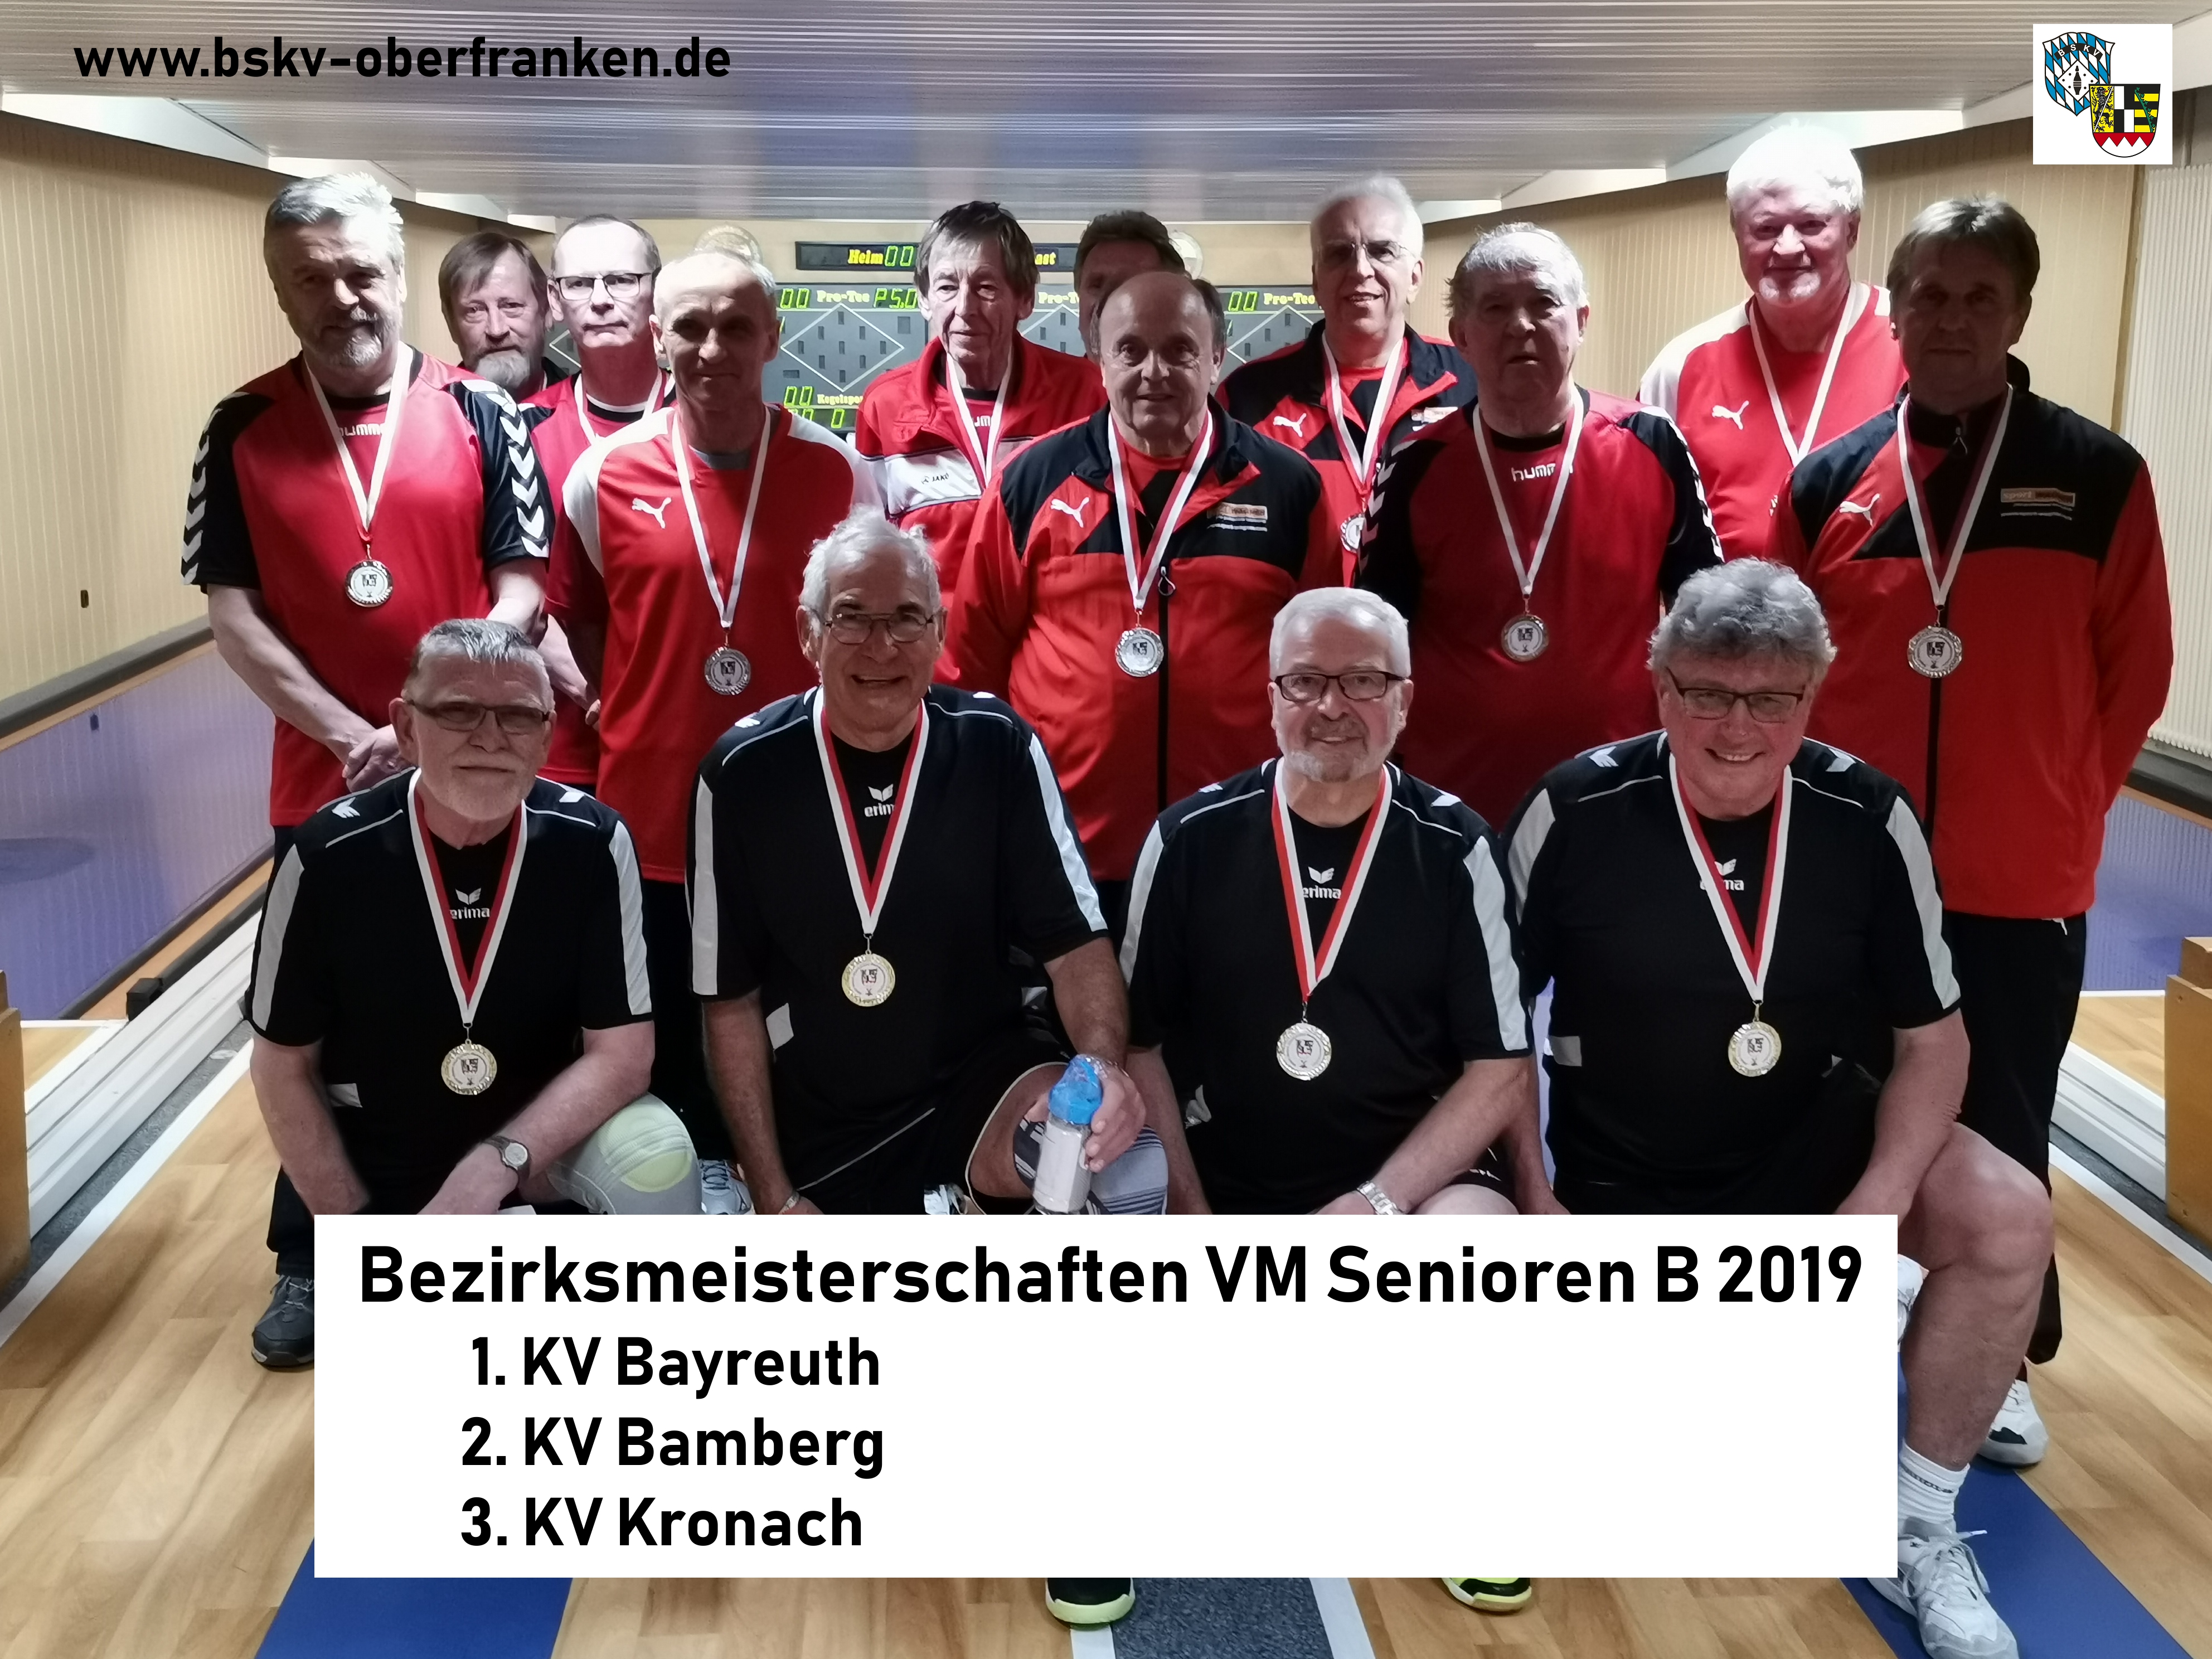 2019 BezM VM Senioren B bearbeitet